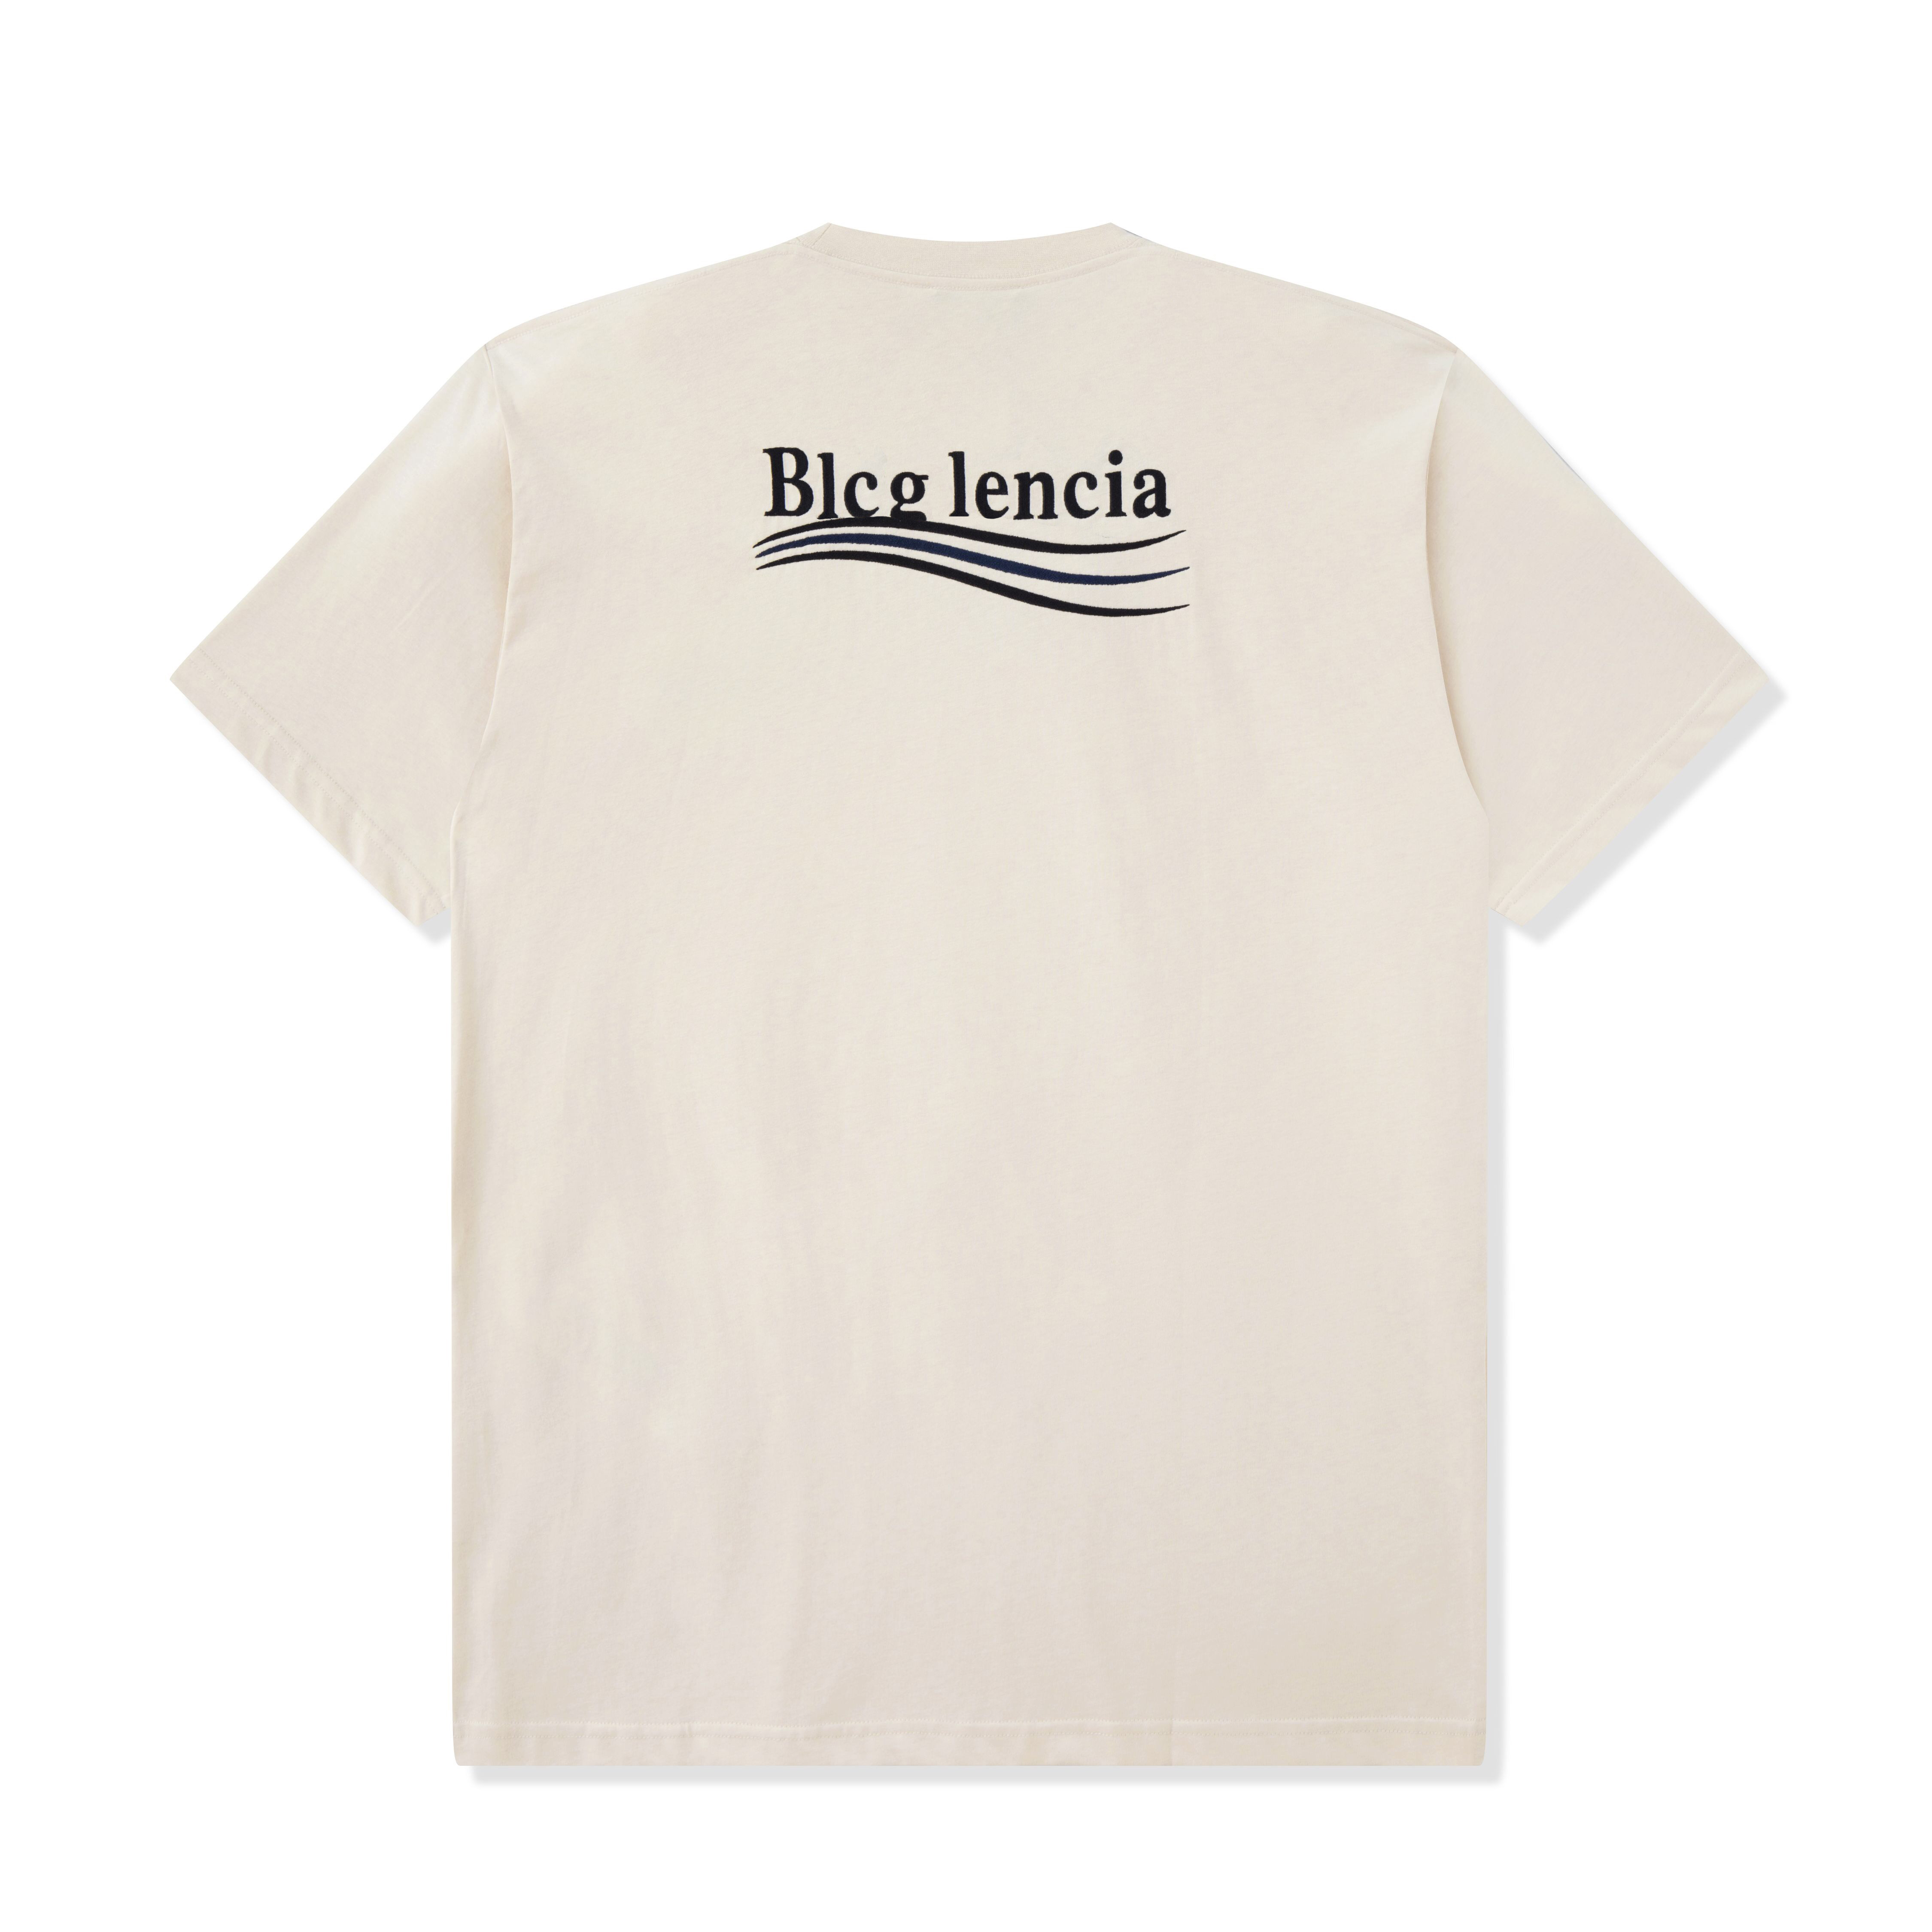 BLCG Lencia Unisex Летние футболки Womens Womens негабайтный тяжелый вес 100% хлопчатобумажная ткань тройной стежок плюс размер топов Tees SM130166